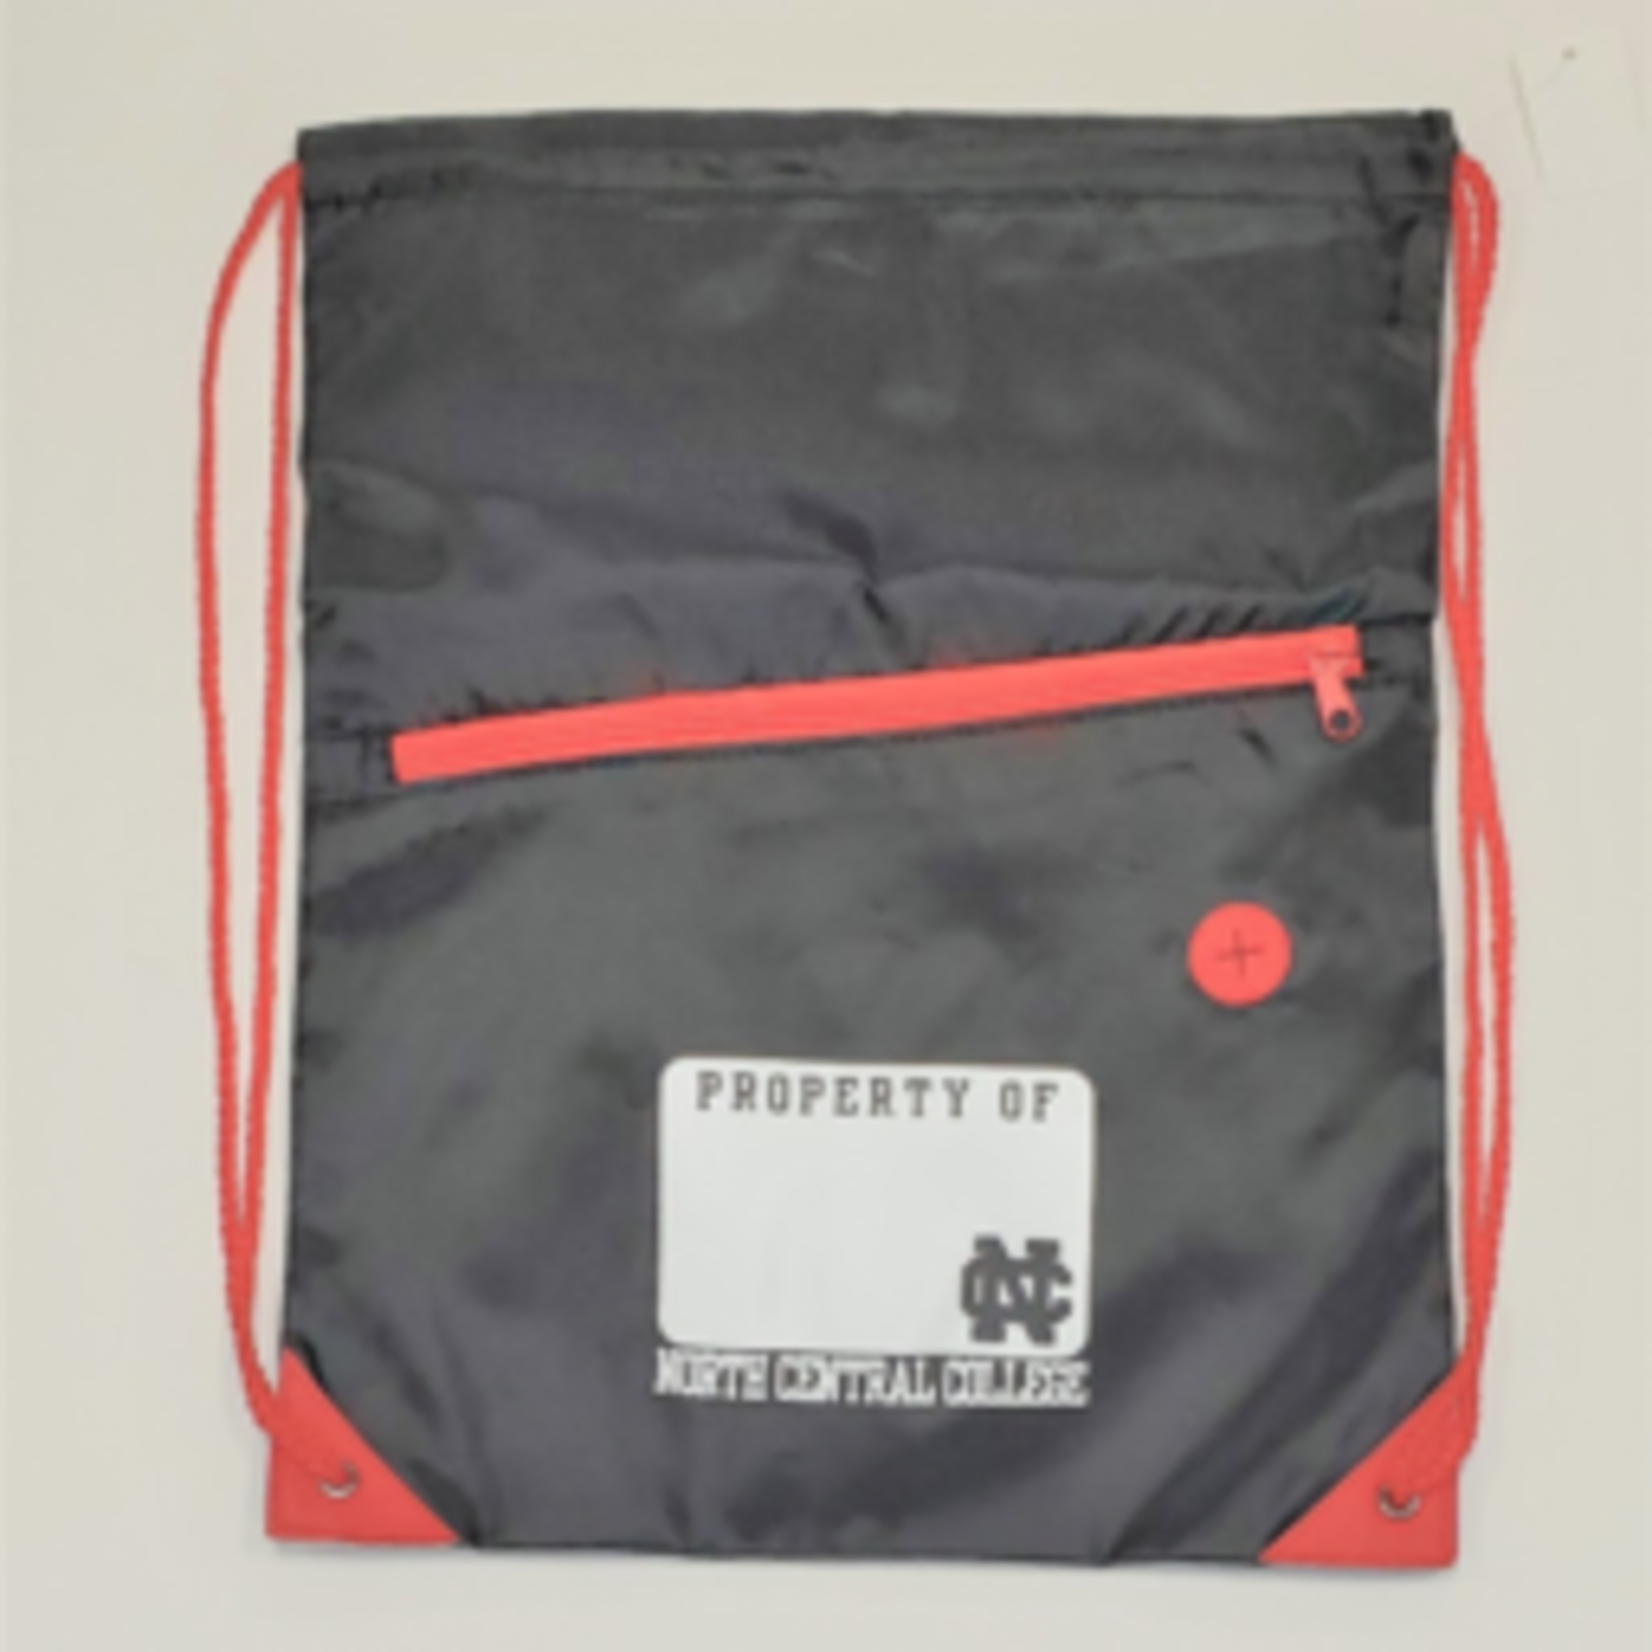 Neil Enterprises North Central College Drawstring Bag Red / Black w pocket